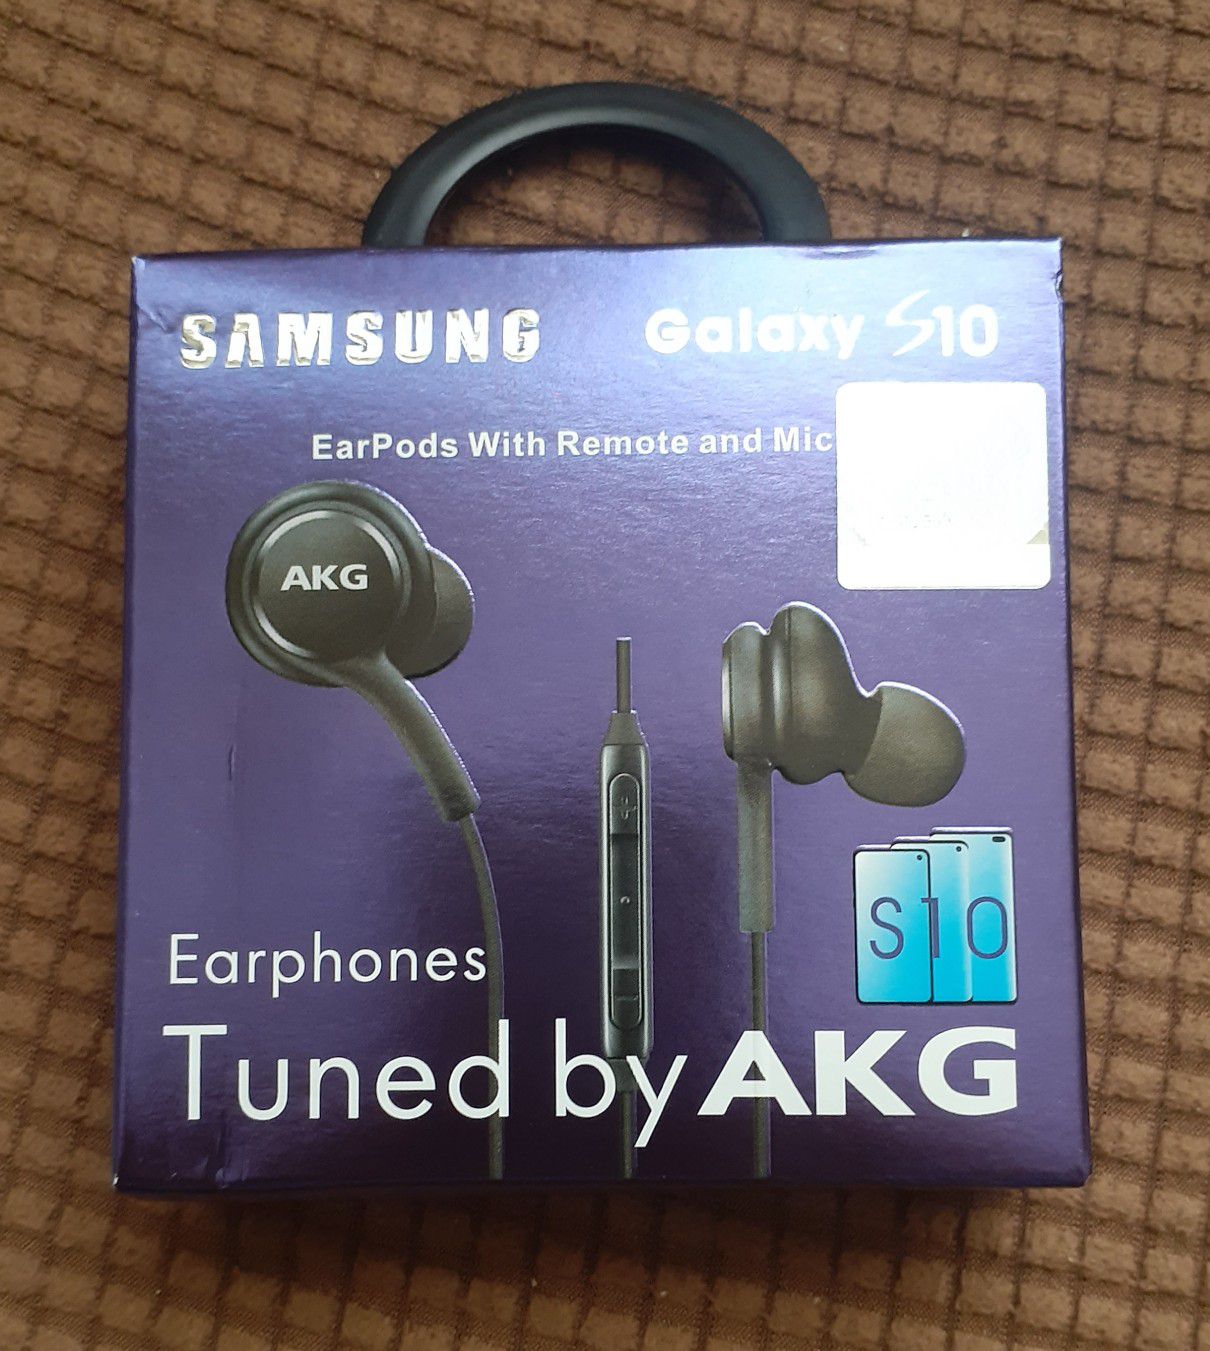 Samsung S10 Earphones, Samsung Original Earphones by AKG, Samsung AKG Earphones, Samsung AKG, Samsung, AKG, Earphones